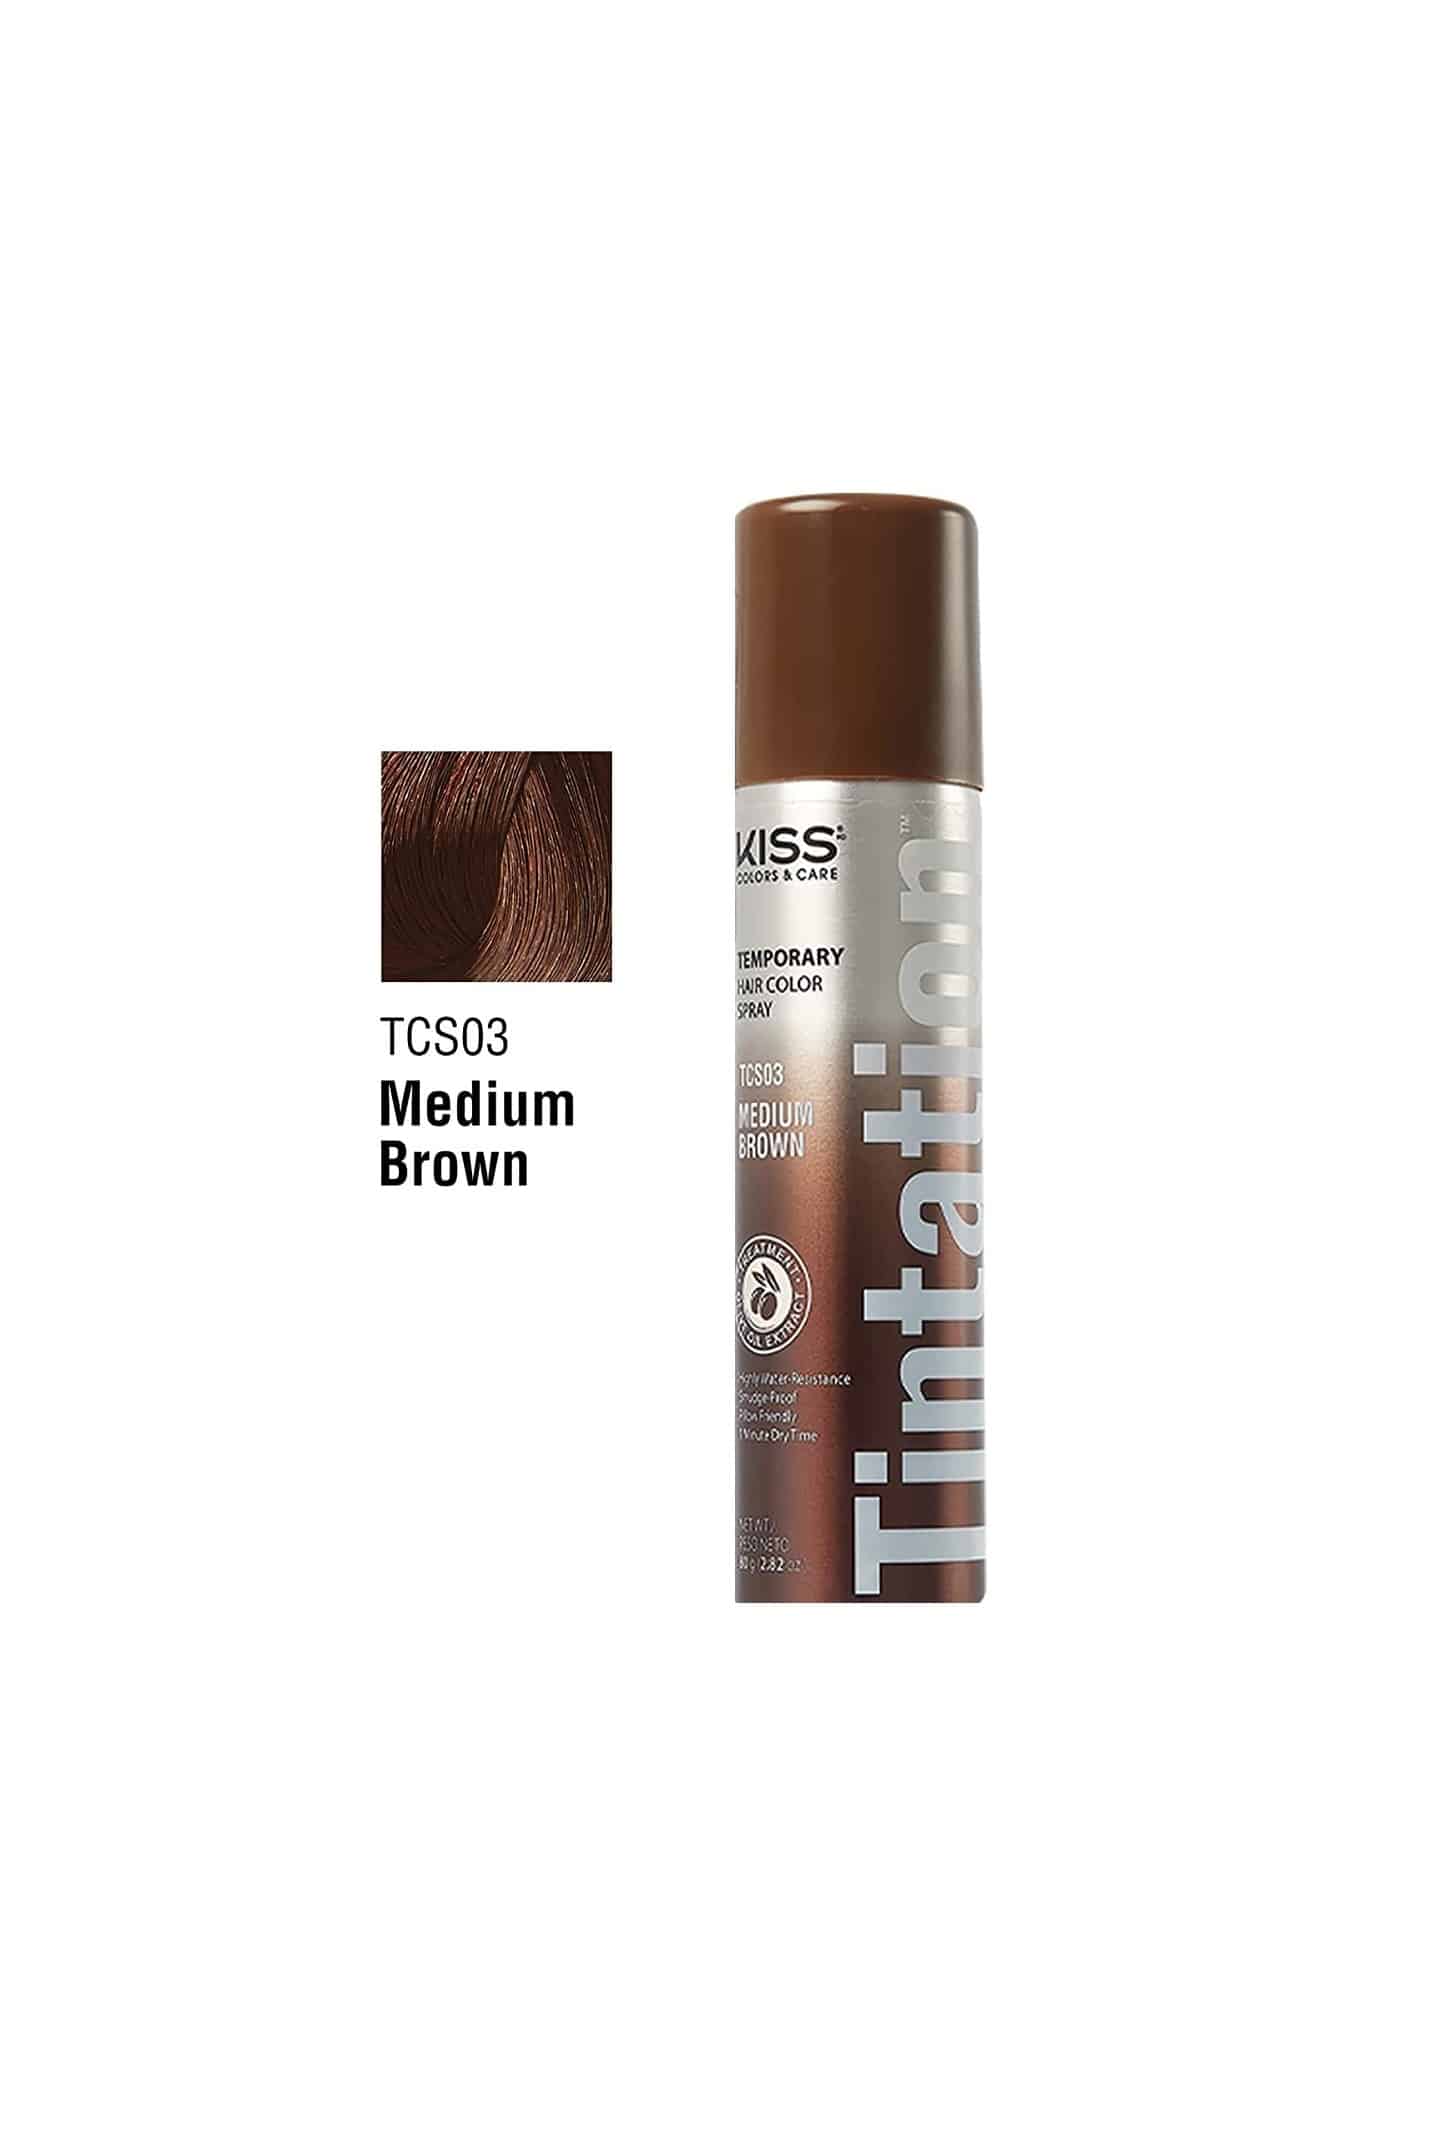 Kiss Tintation Temporary Hair Color Spray 2.82oz Medium Brown